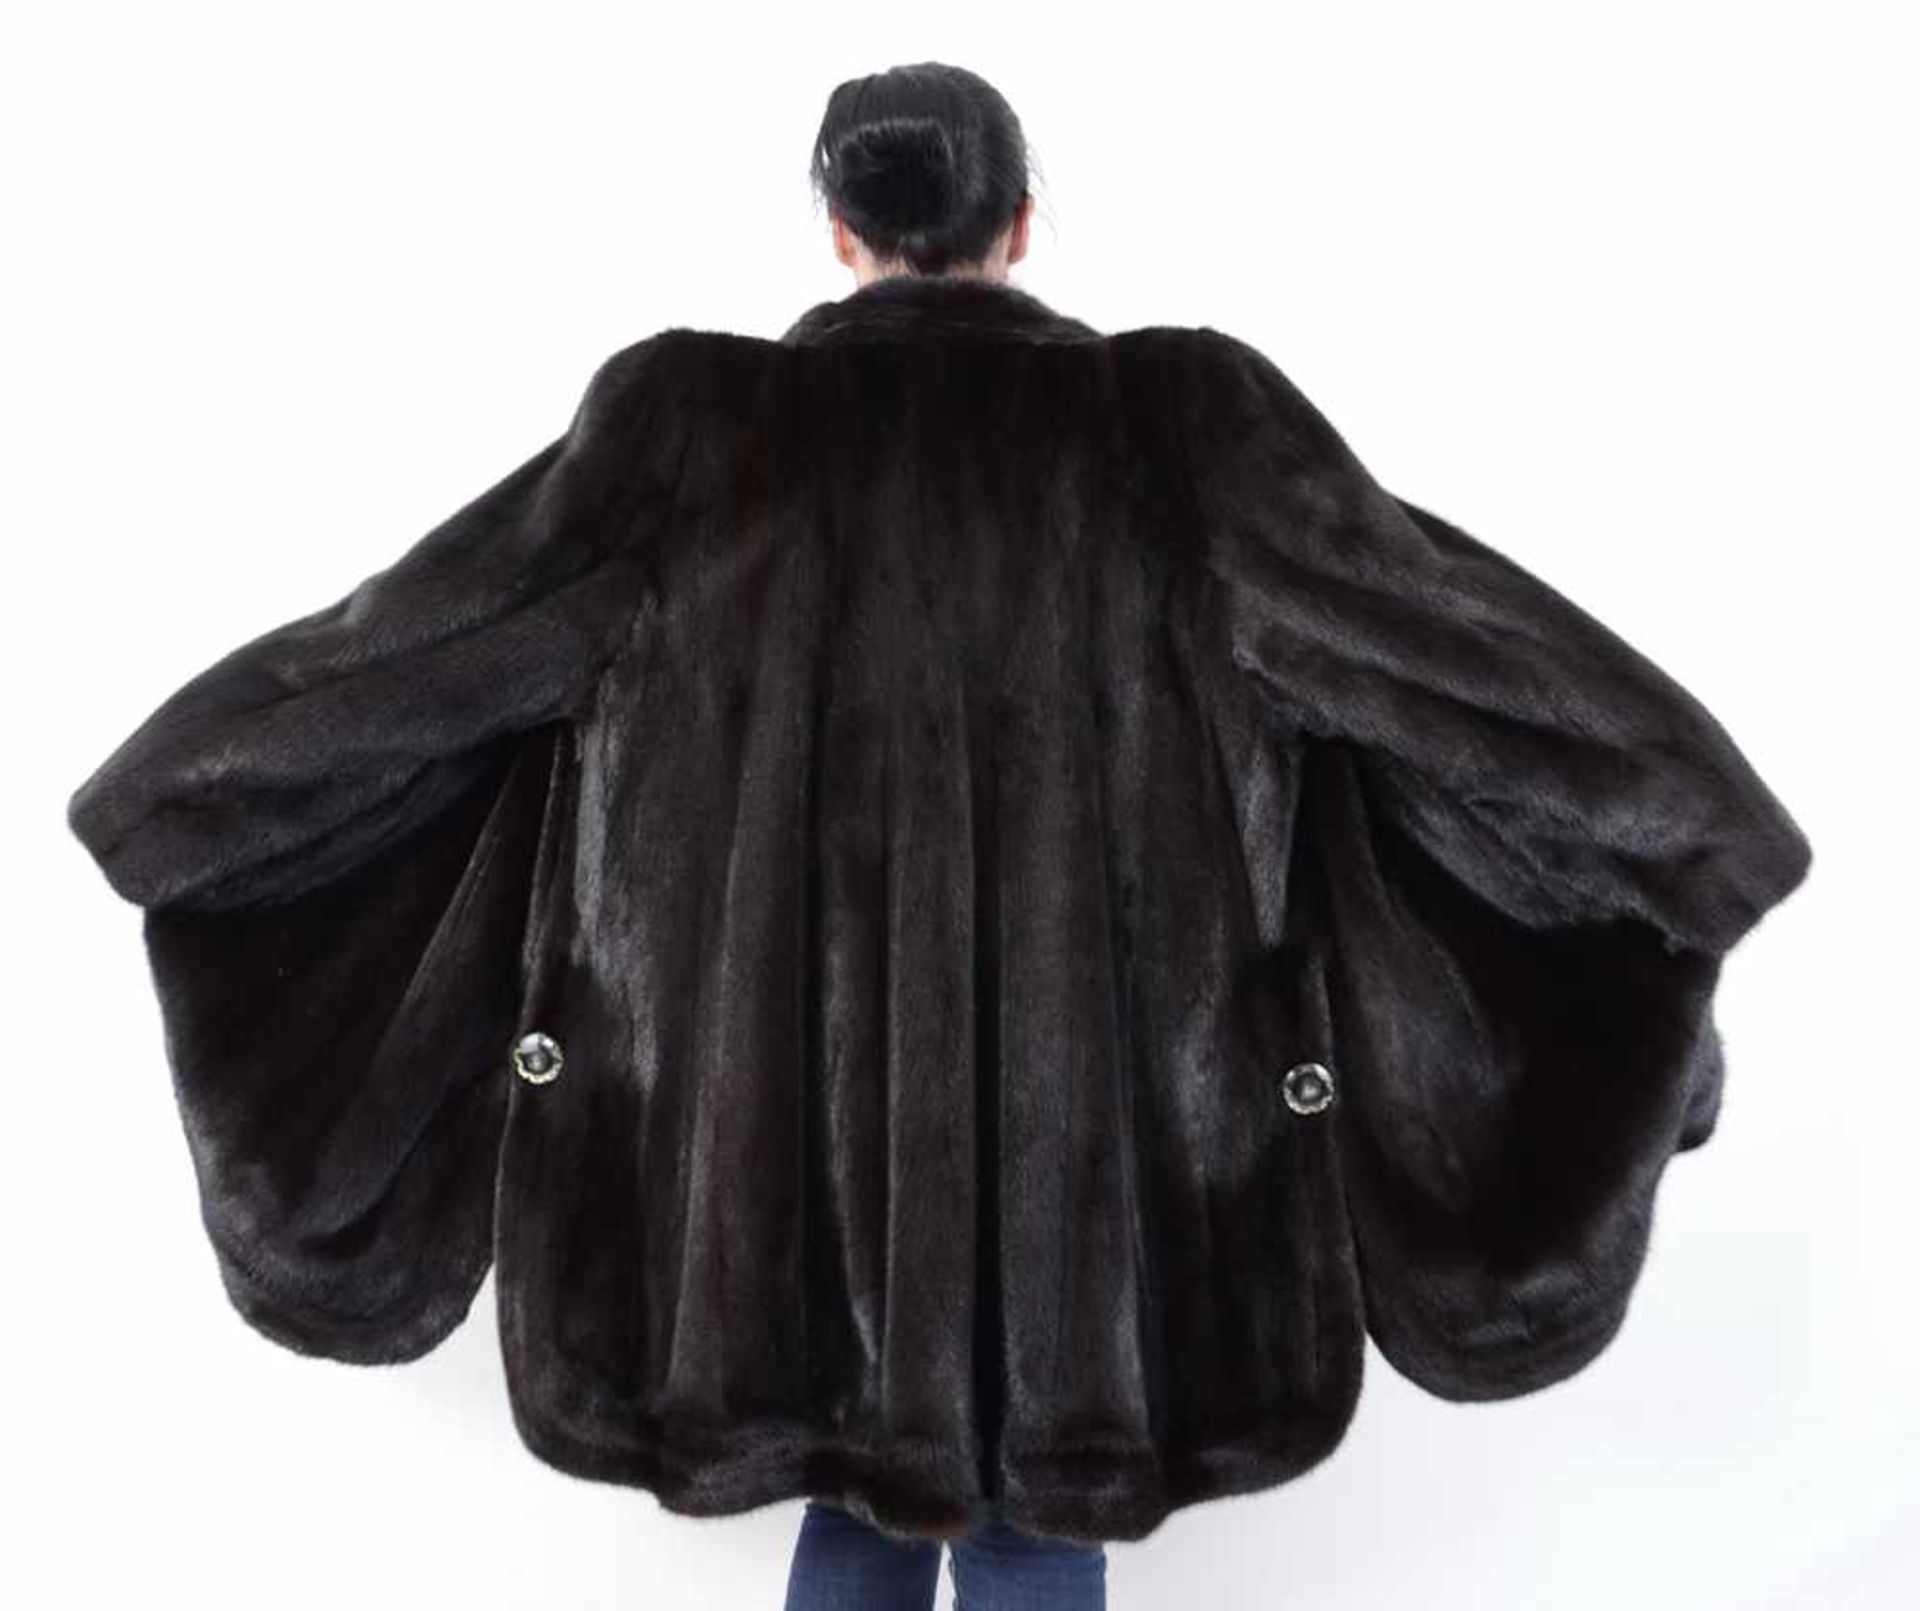 Pelzjacke Nerzjacke braun 3/4 lang - Mink Fur Jacket 3/4 Long, Size: 48 - XXL 2 Taschen, sehr